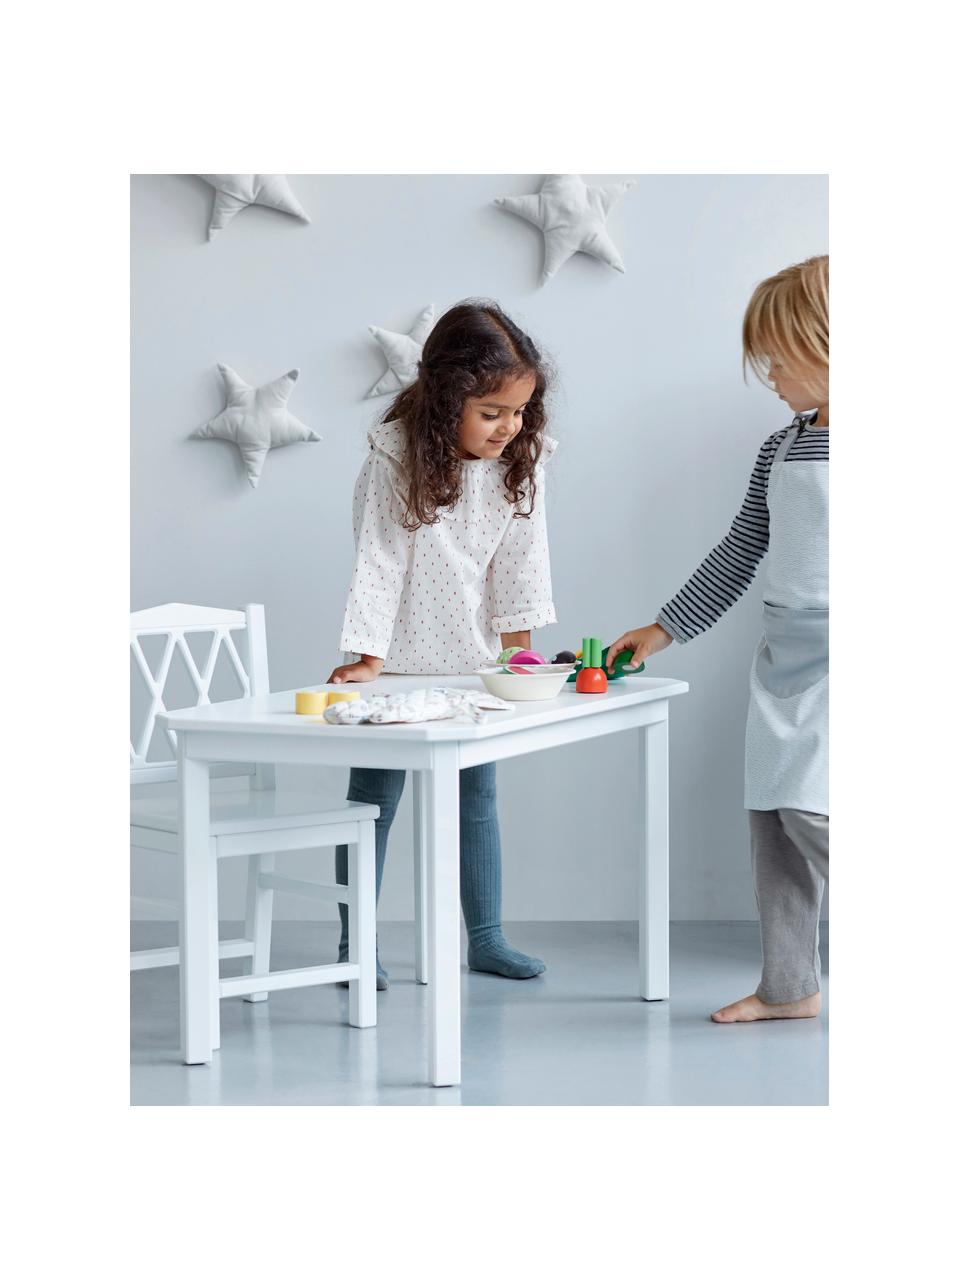 Stół dla dzieci Harlequin, Drewno brzozowe, płyta pilśniowa (MDF), lakierowane farbą wolną od LZO, Drewno brzozowe lakierowane na biało, S 79 x W 47 cm